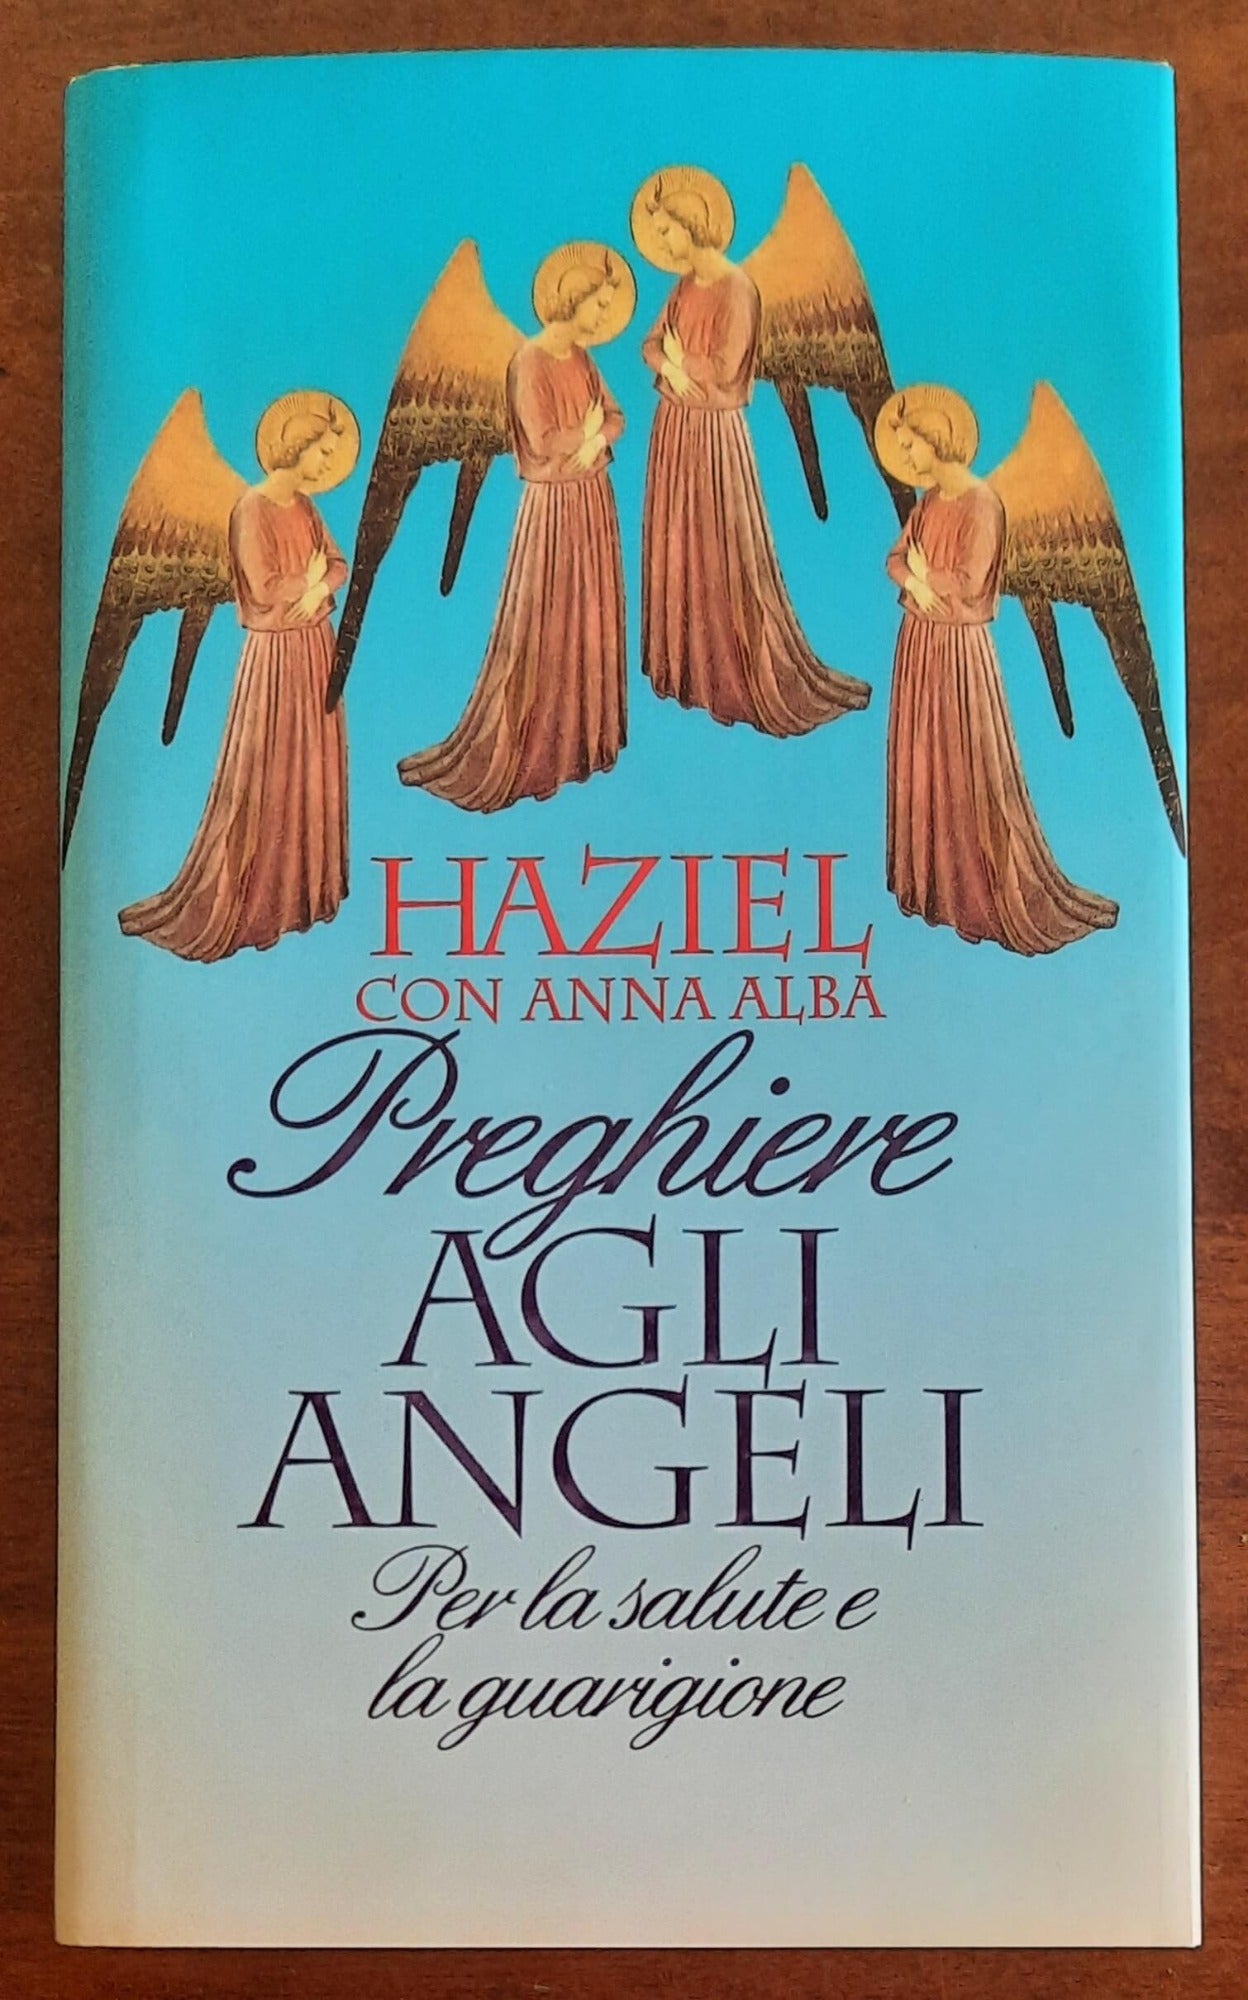 Preghiere agli Angeli. Per la salute e la guarigione